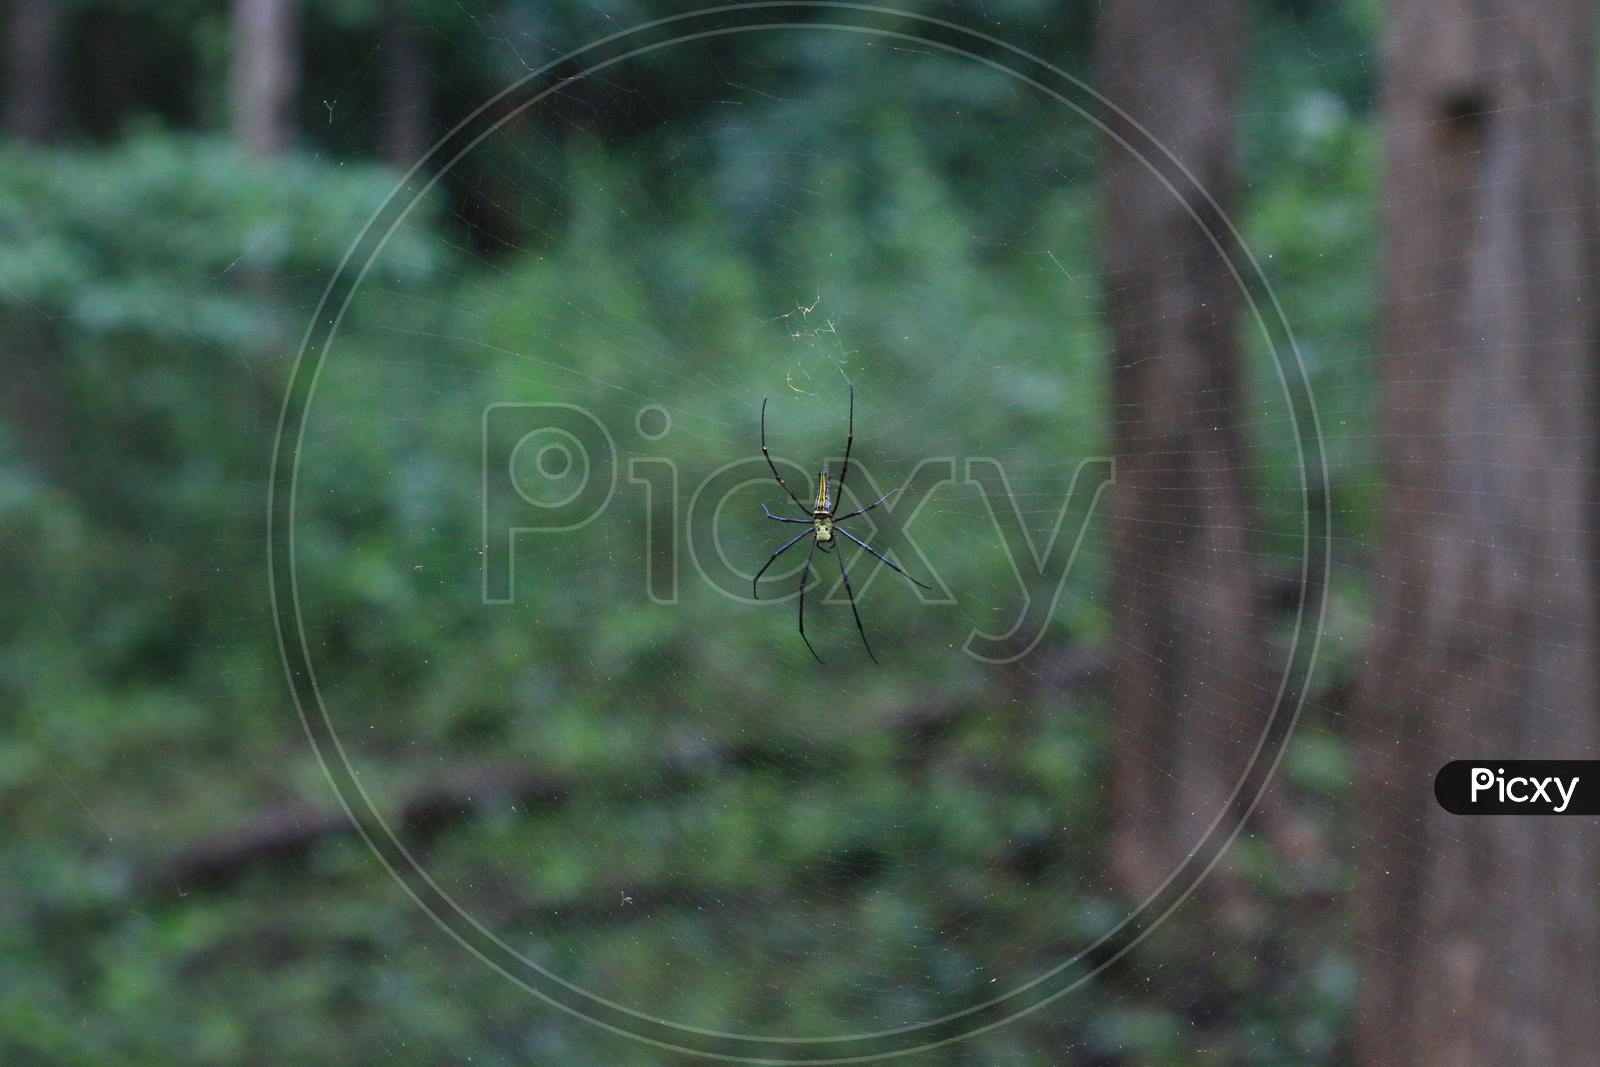 A Spider in a Web Closeup Shot